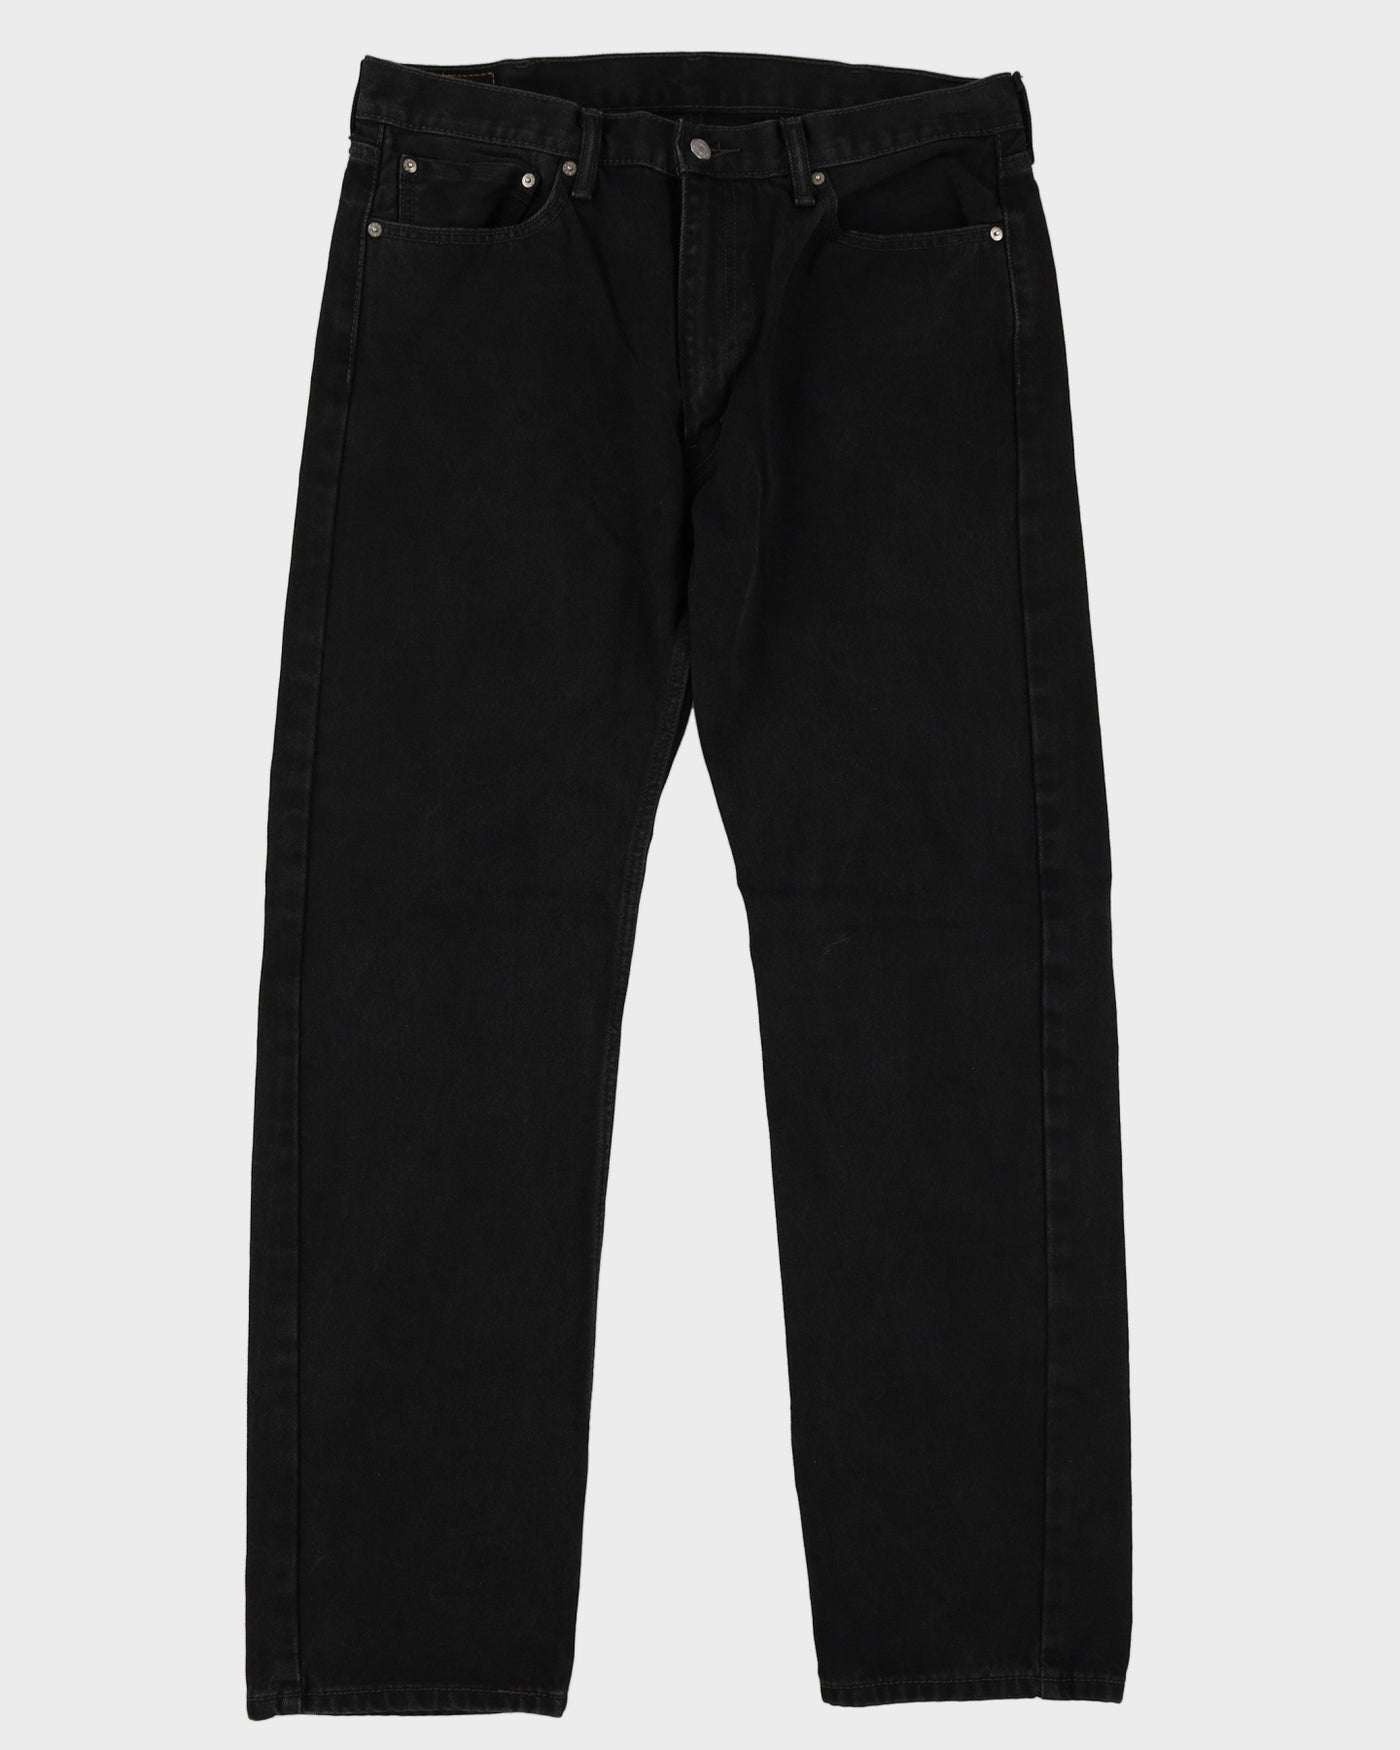 Levi's 505 Black Dark Wash Jeans - W38 L34